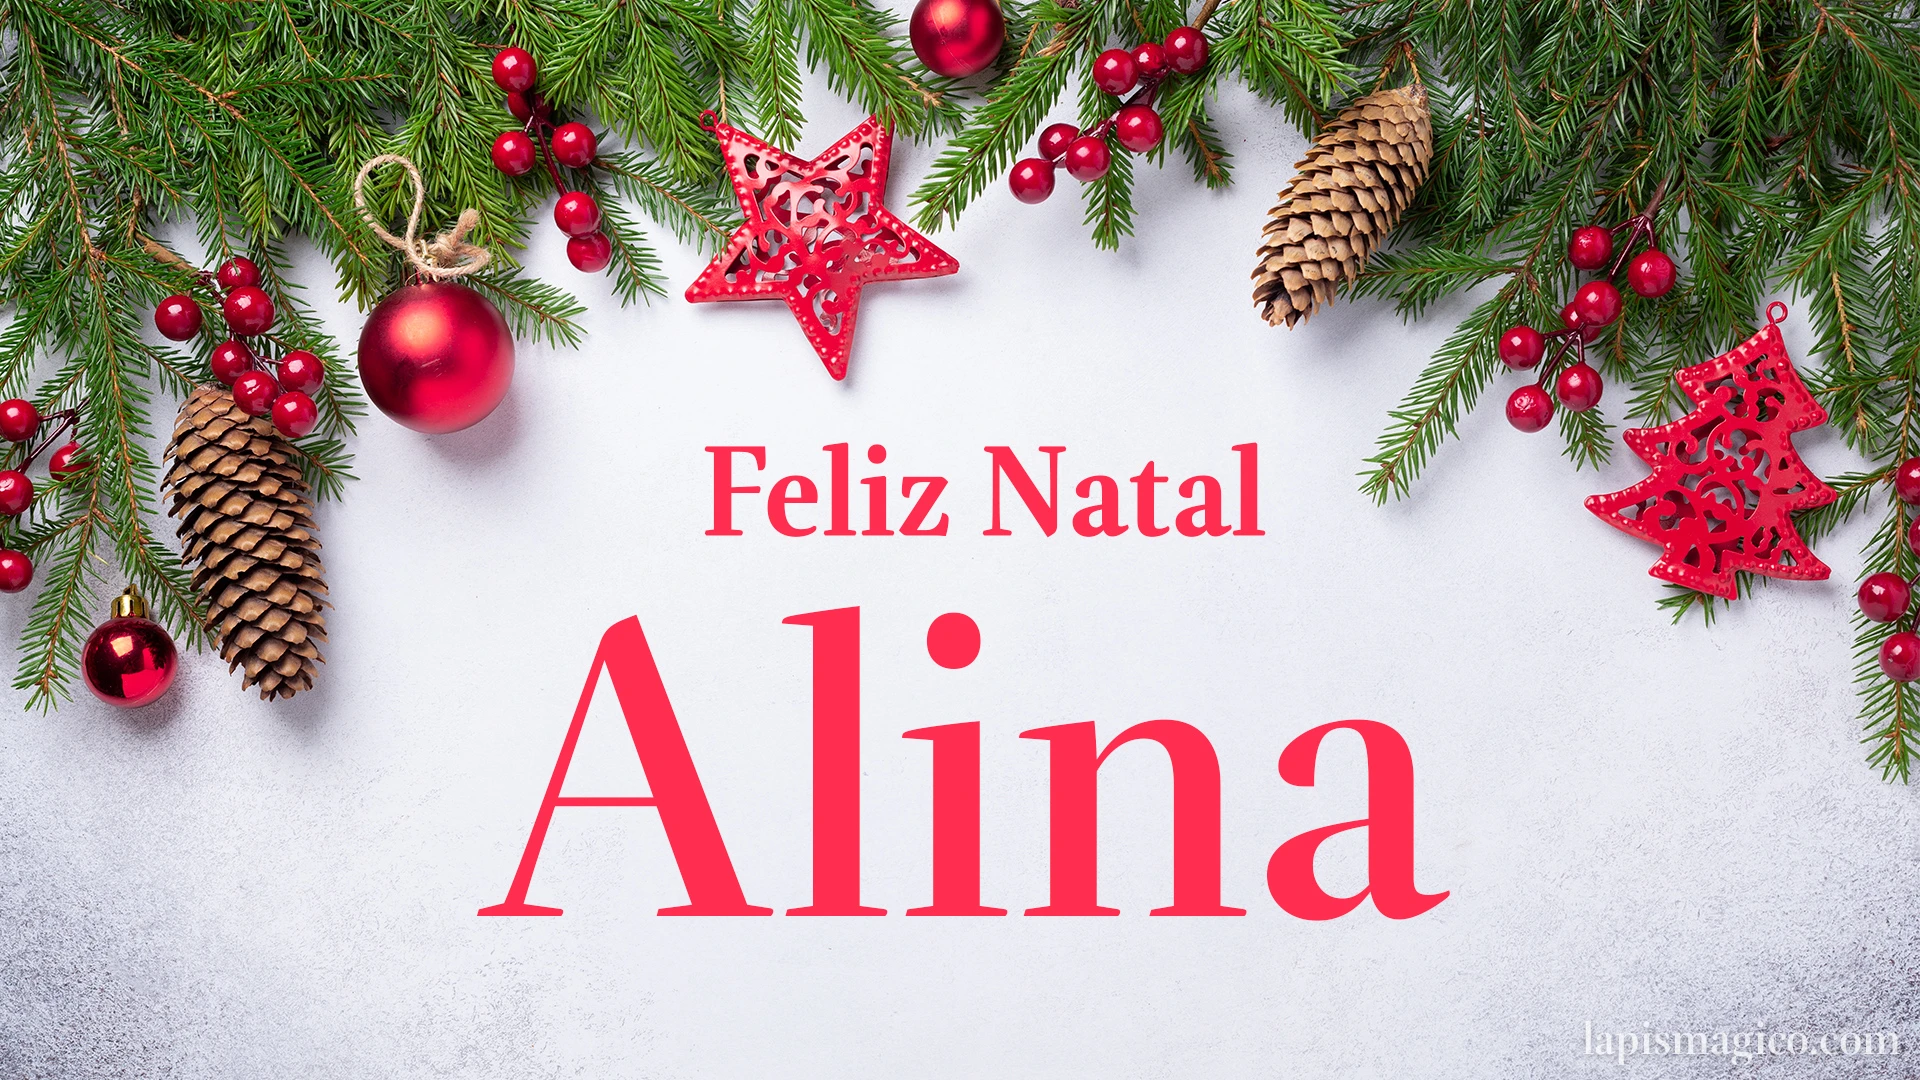 Oh Alina, cinco postais de Feliz Natal Postal com o teu nome